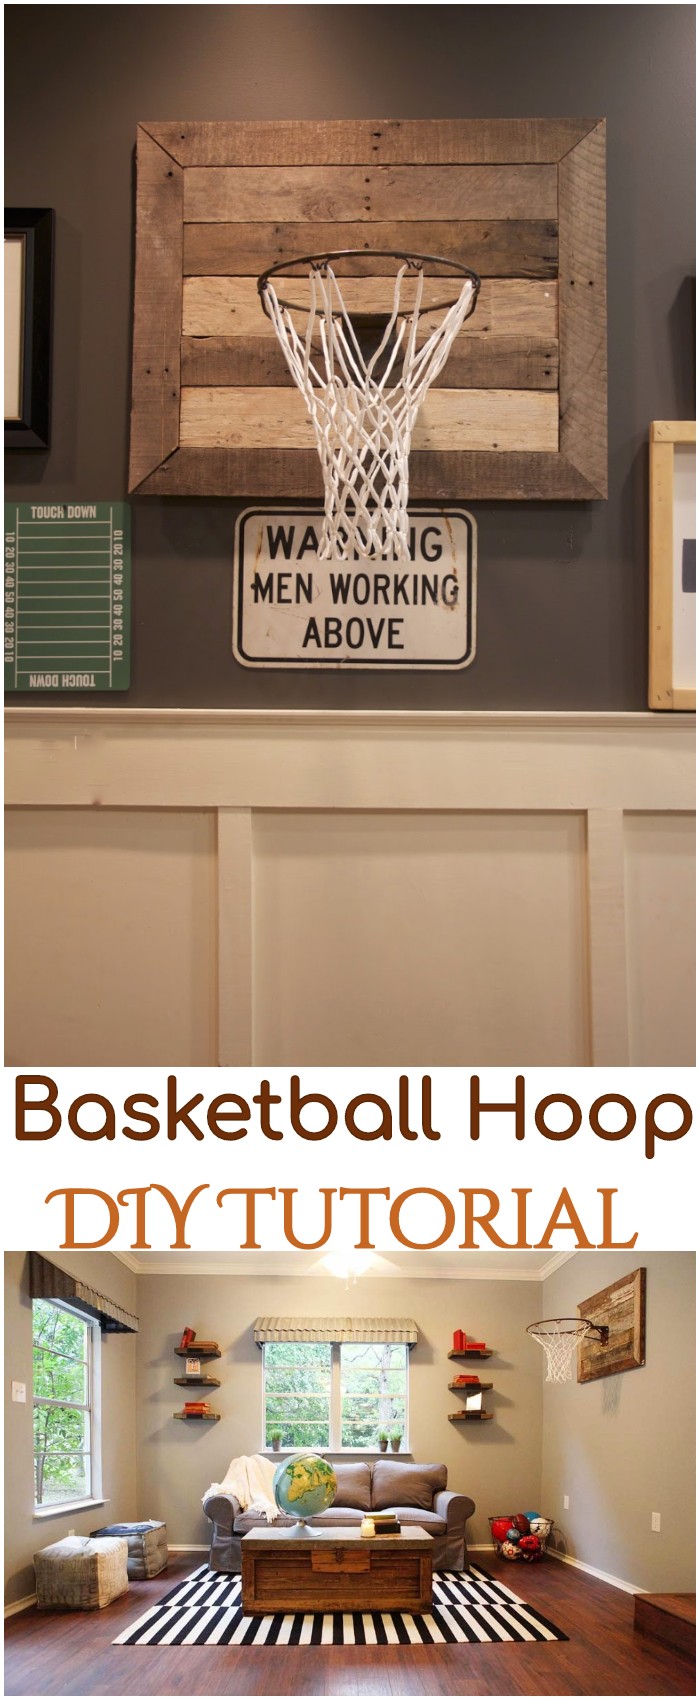 DIY Basketball Hoop